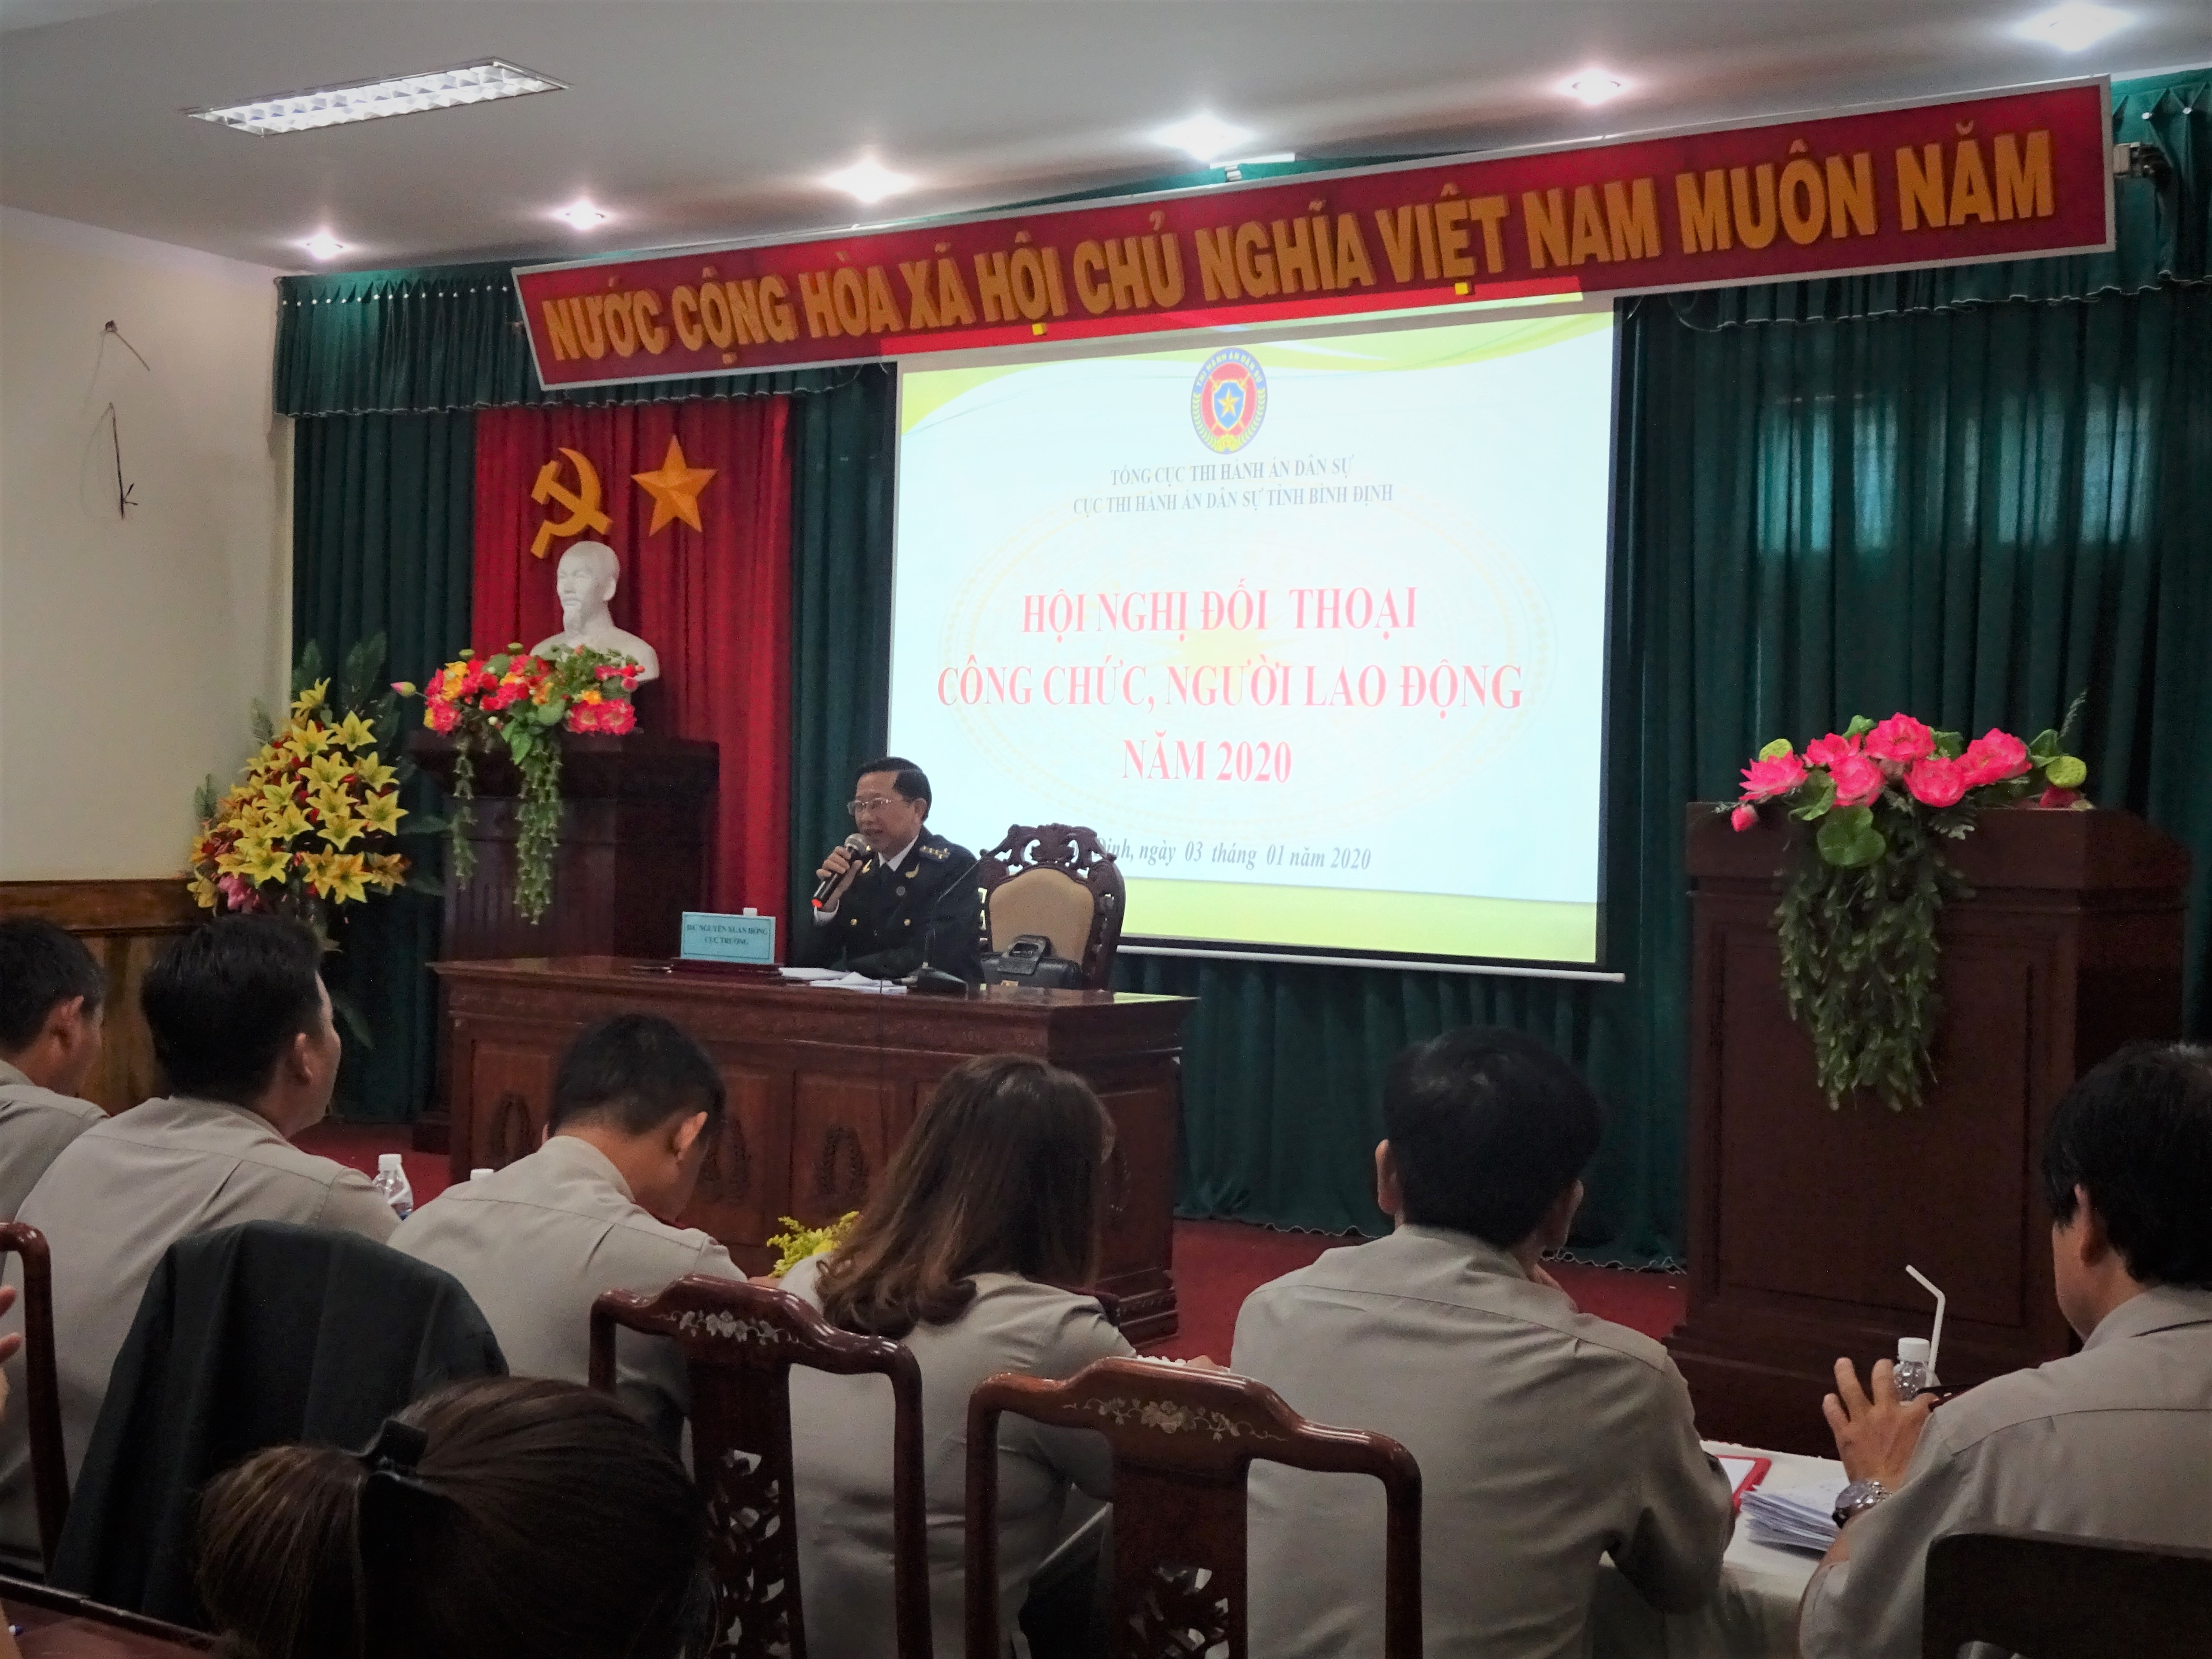 Cục Thi hành án dân sự tỉnh Bình Định tổ chức Hội nghị đối thoại công chức, người lao động năm 2020